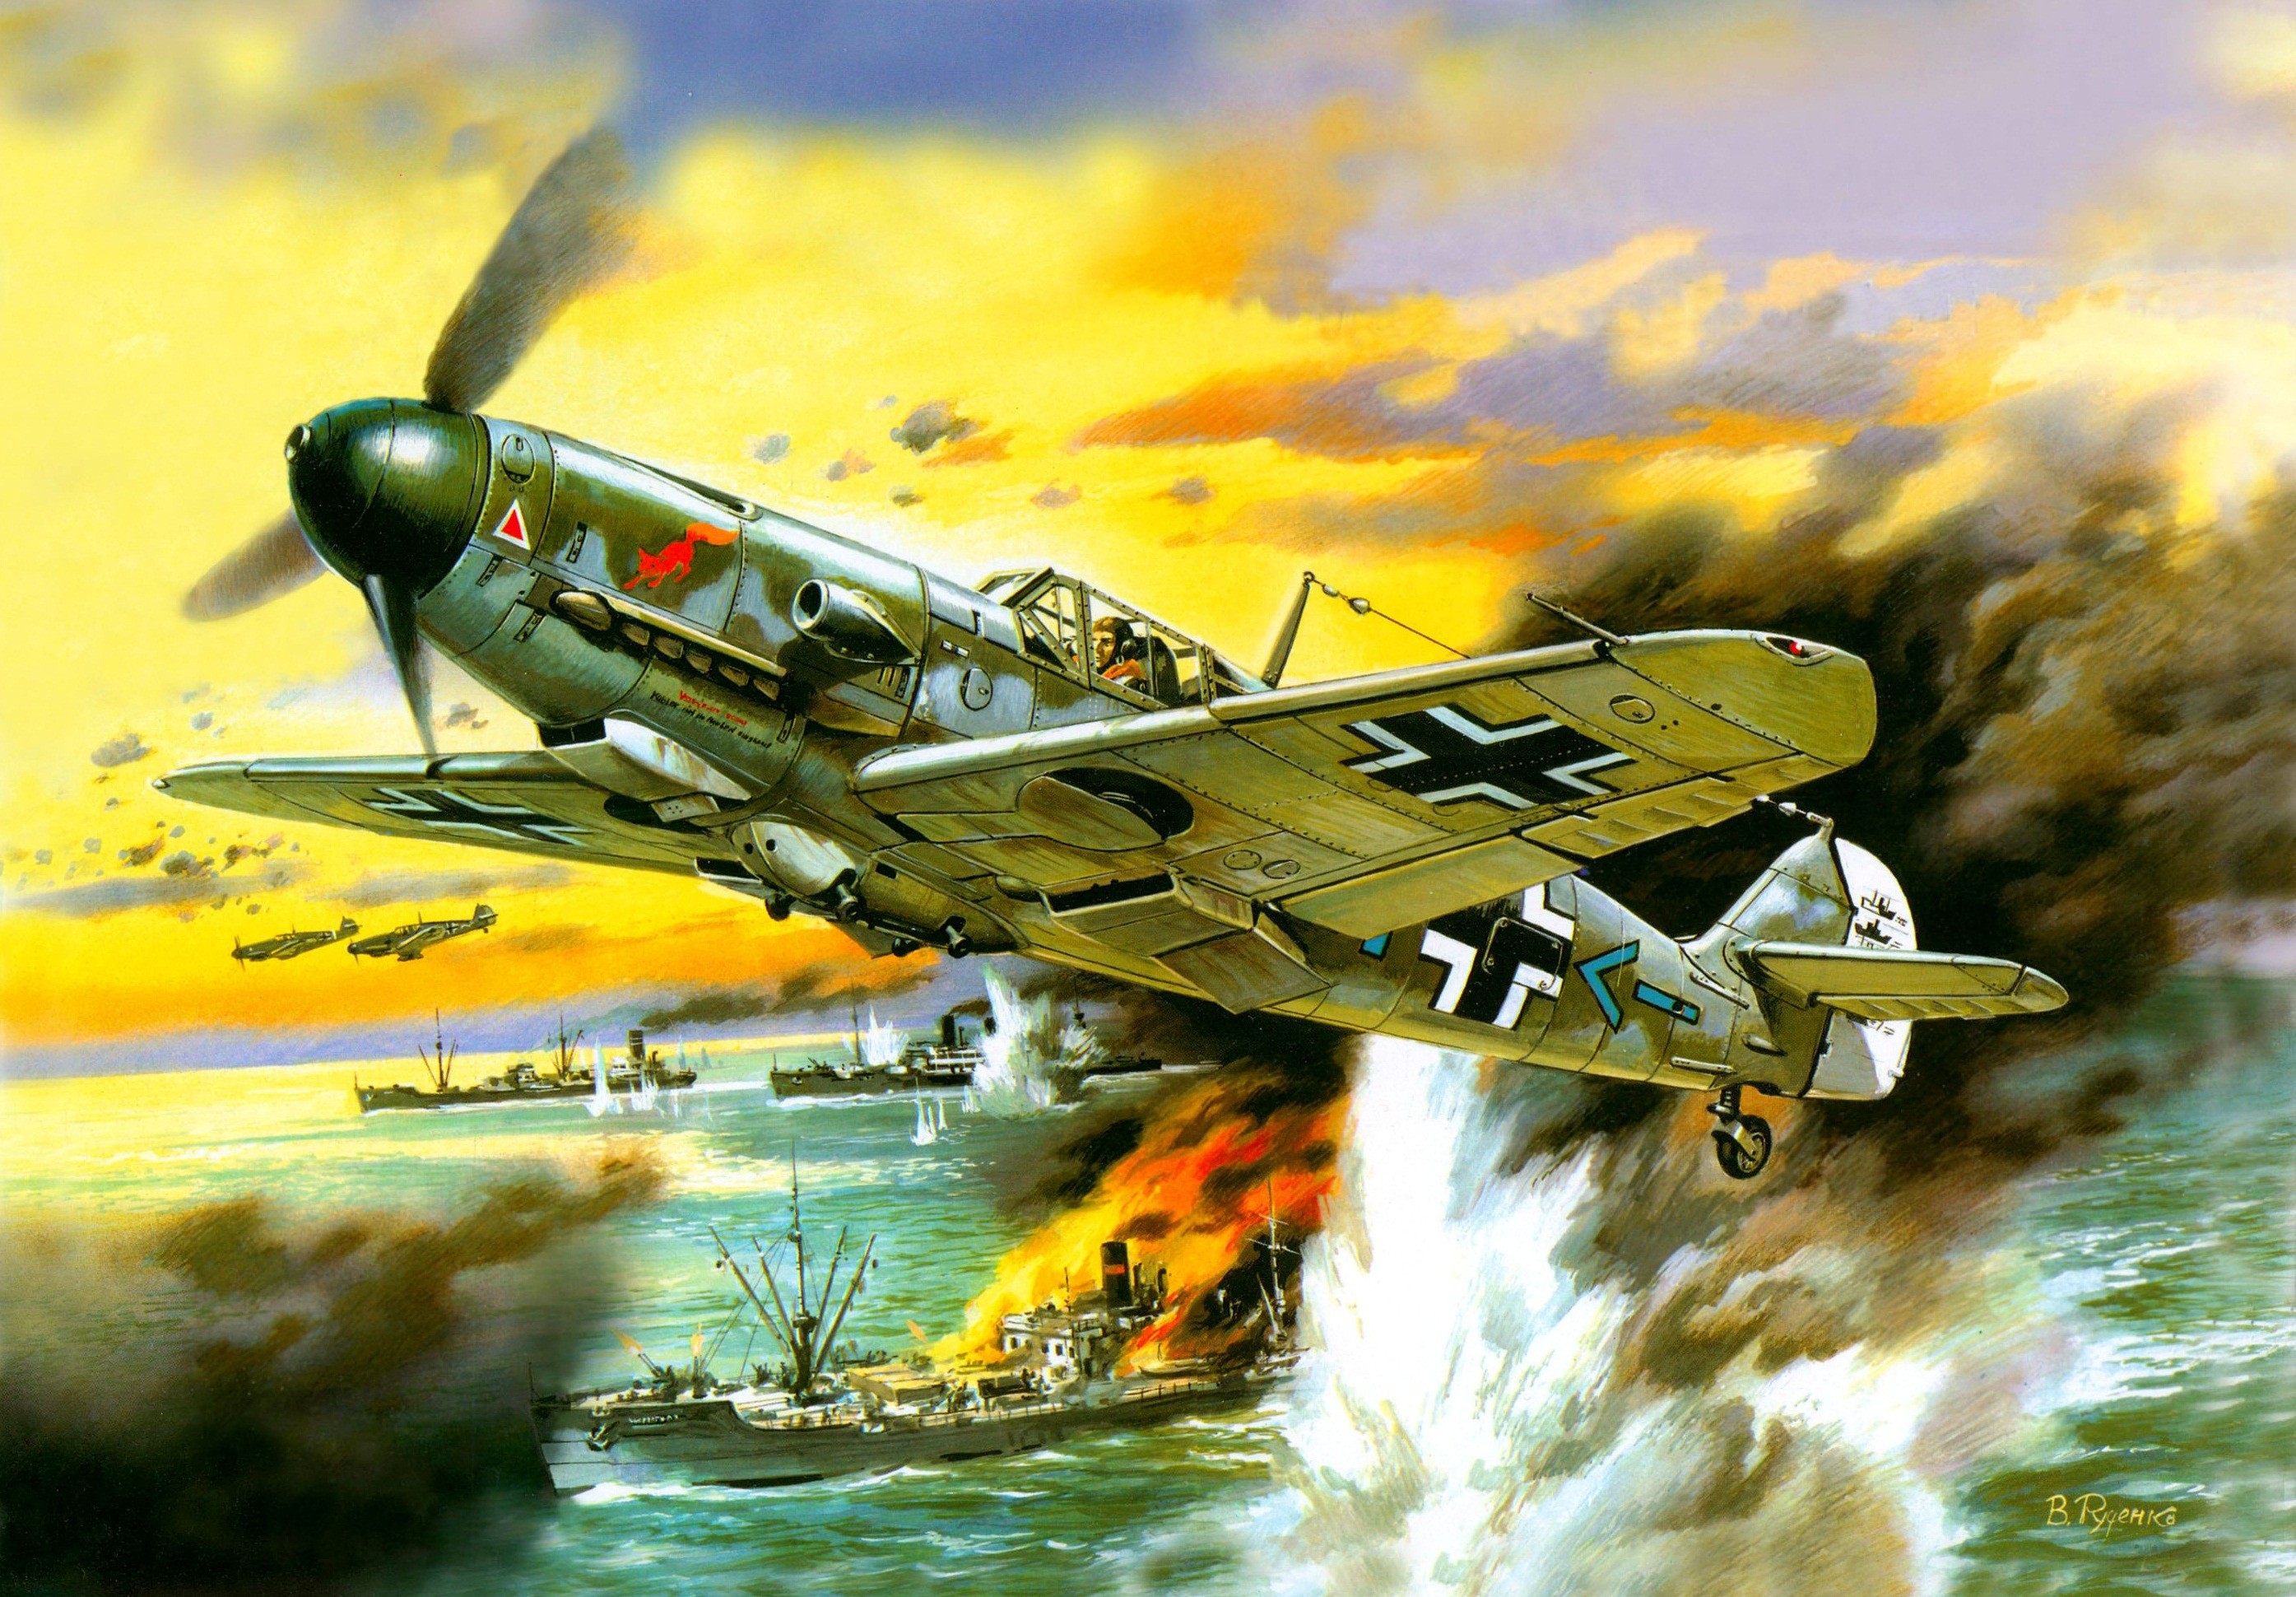 Messerschmitt, Messerschmitt Bf 109, World War II, Germany, Military Aircraft, Luftwaffe Wallpaper